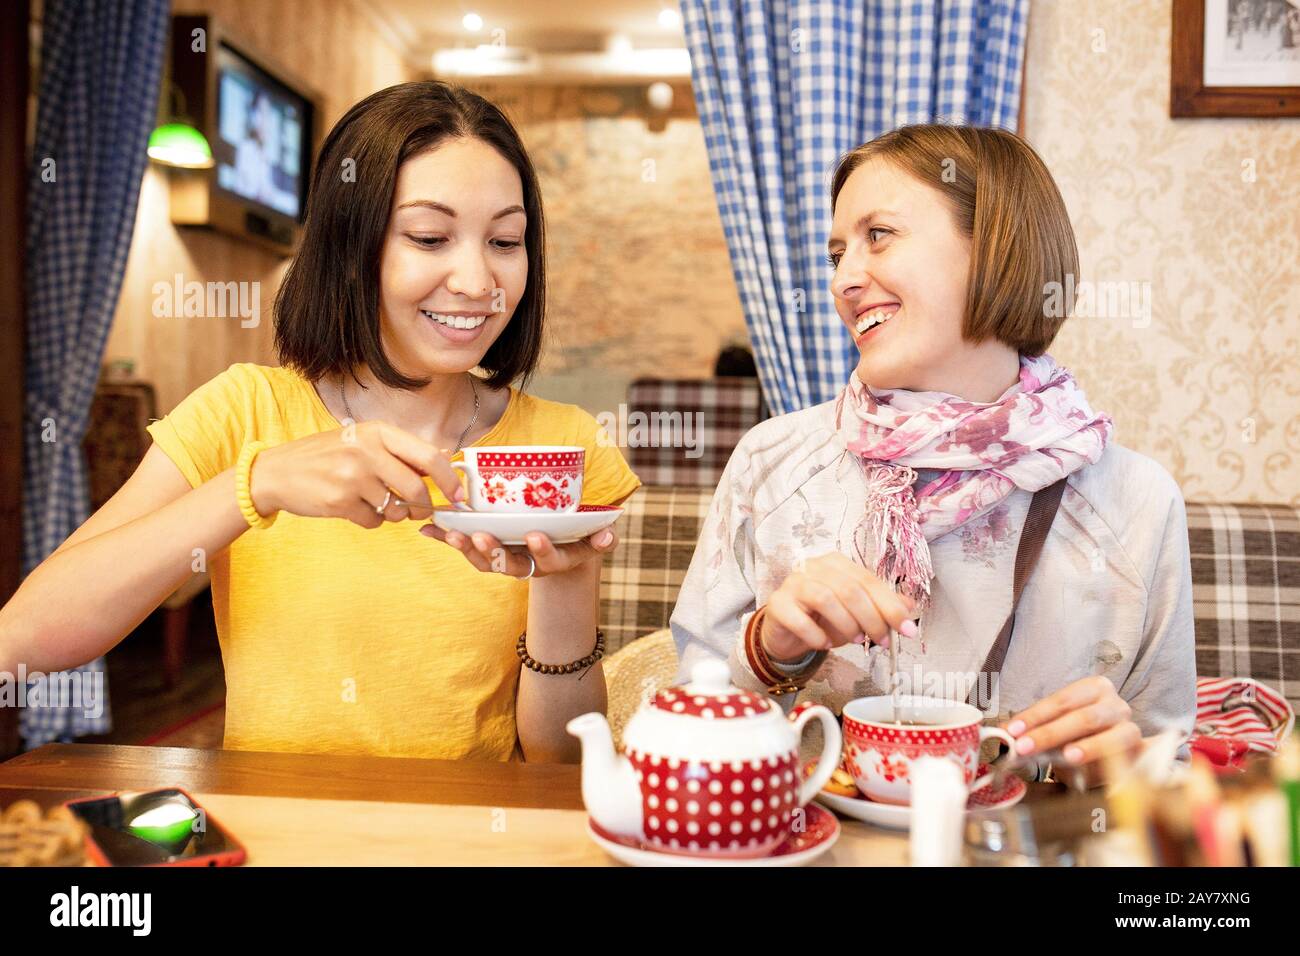 Des amis parlent et rient tout en prenant une tasse de thé dans un café Banque D'Images